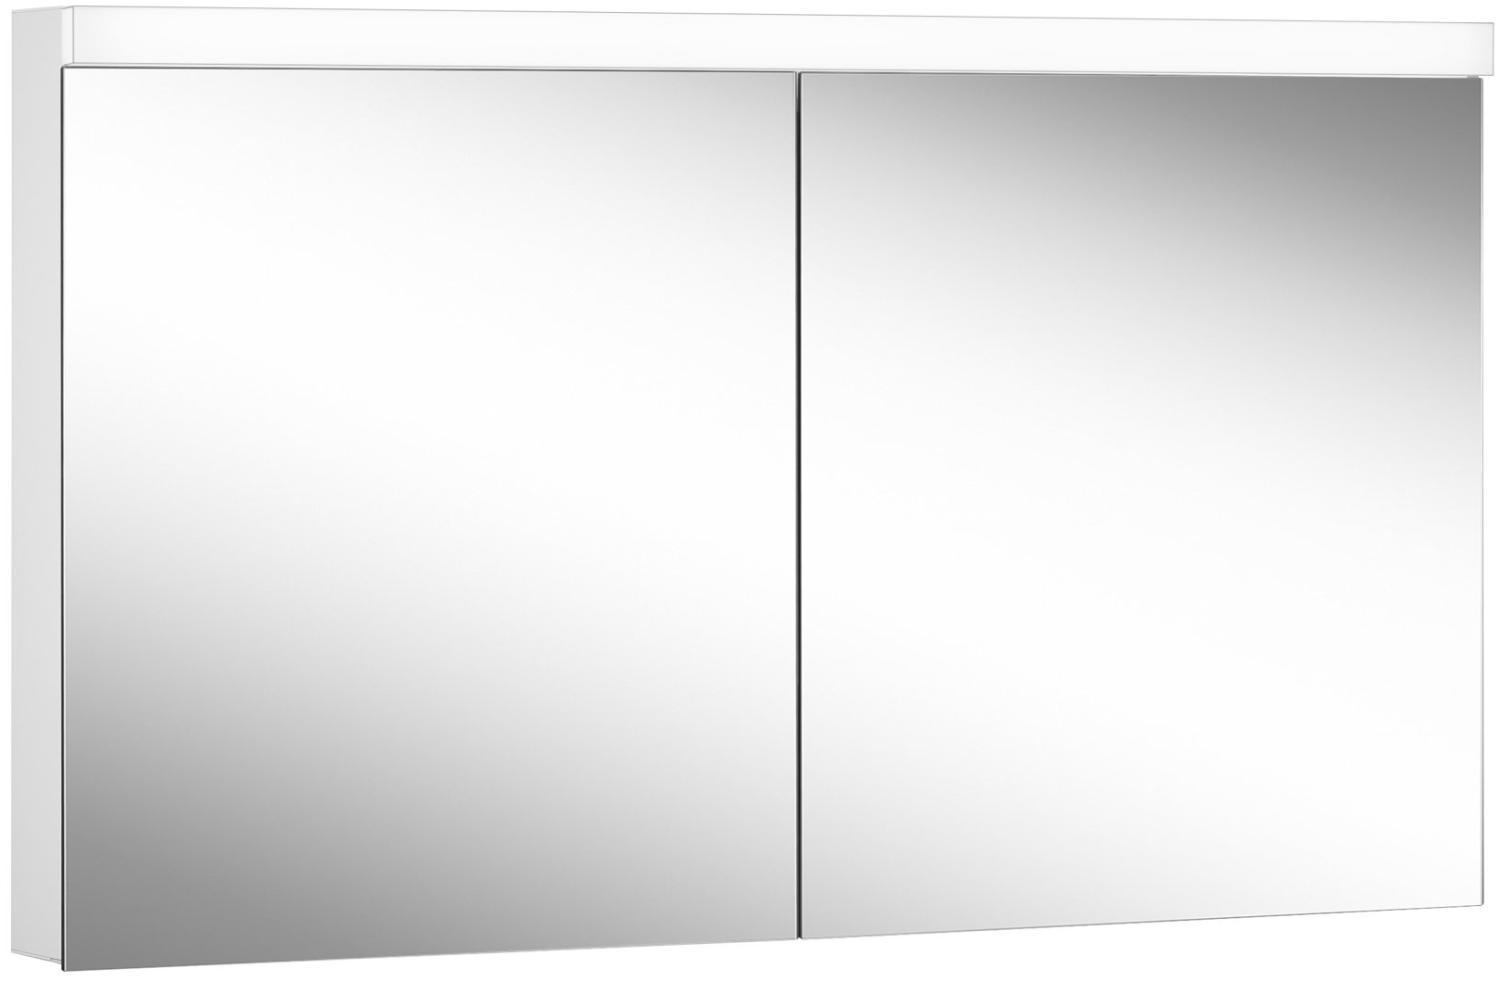 Schneider DAILY Line Ultimate LED Lichtspiegelschrank, 2 Doppelspiegeltüren, 130x74,8x13cm, 178. 130. 02. 02, Ausführung: EU-Norm/Korpus weiss - 178. 130. 02. 02 Bild 1